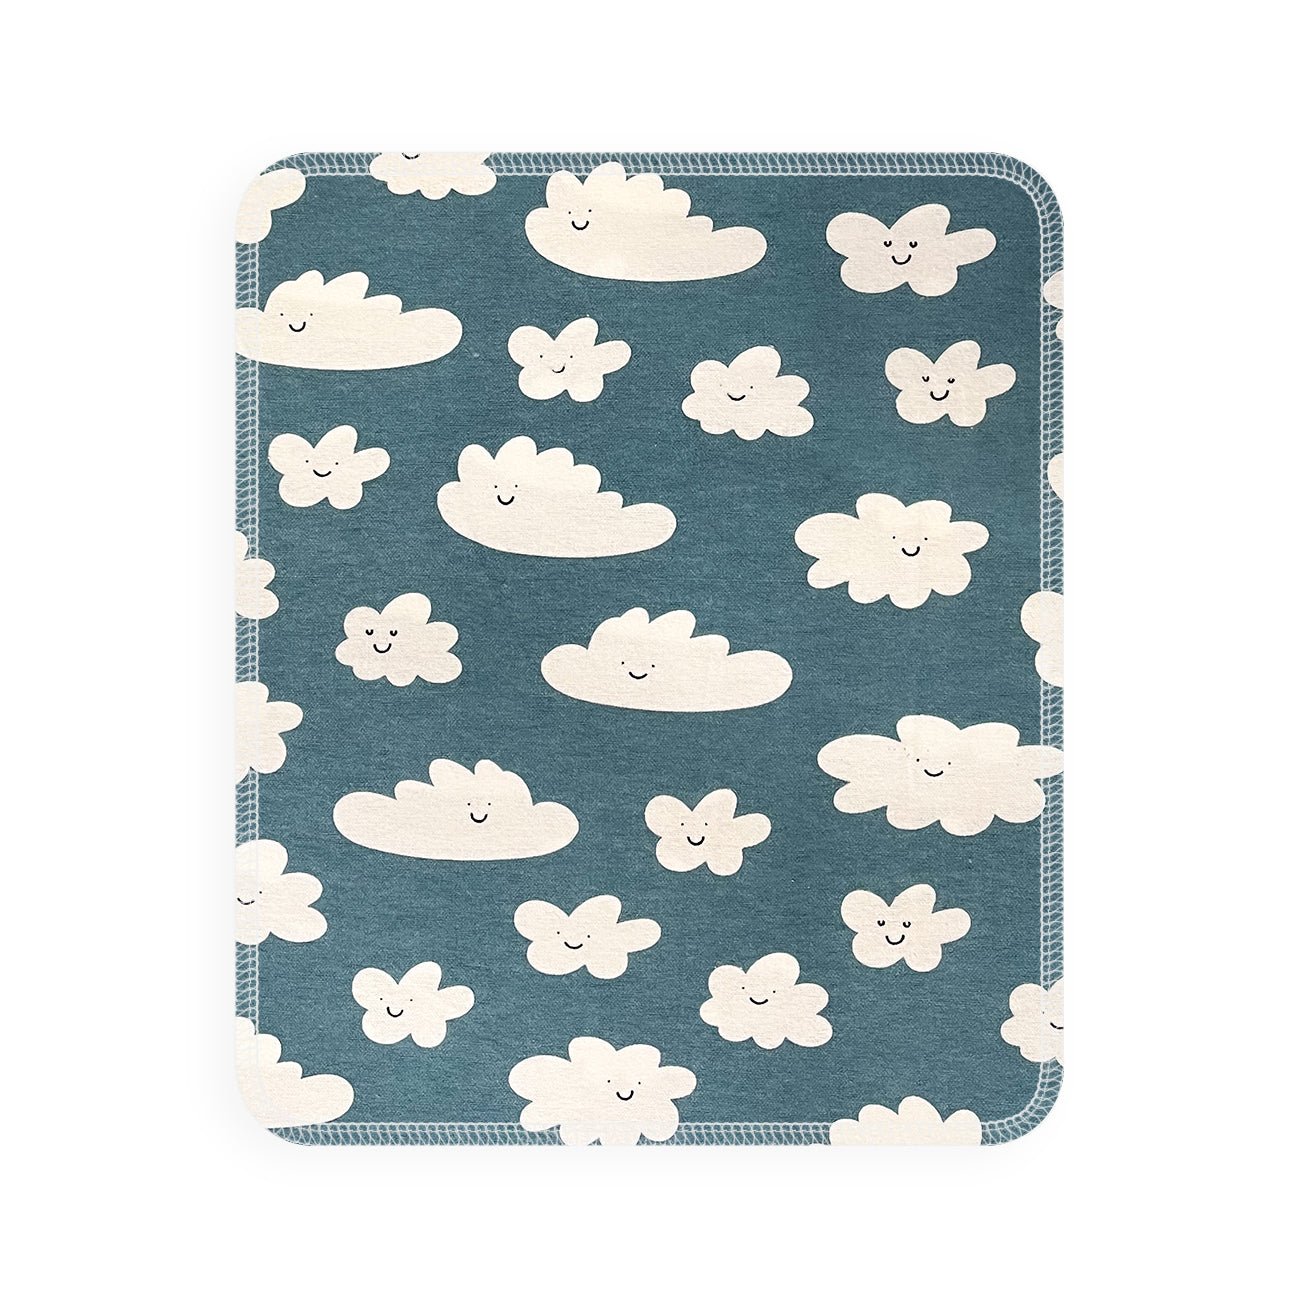 UNpaper® Towel Single: Clouds - Marley's Monsters